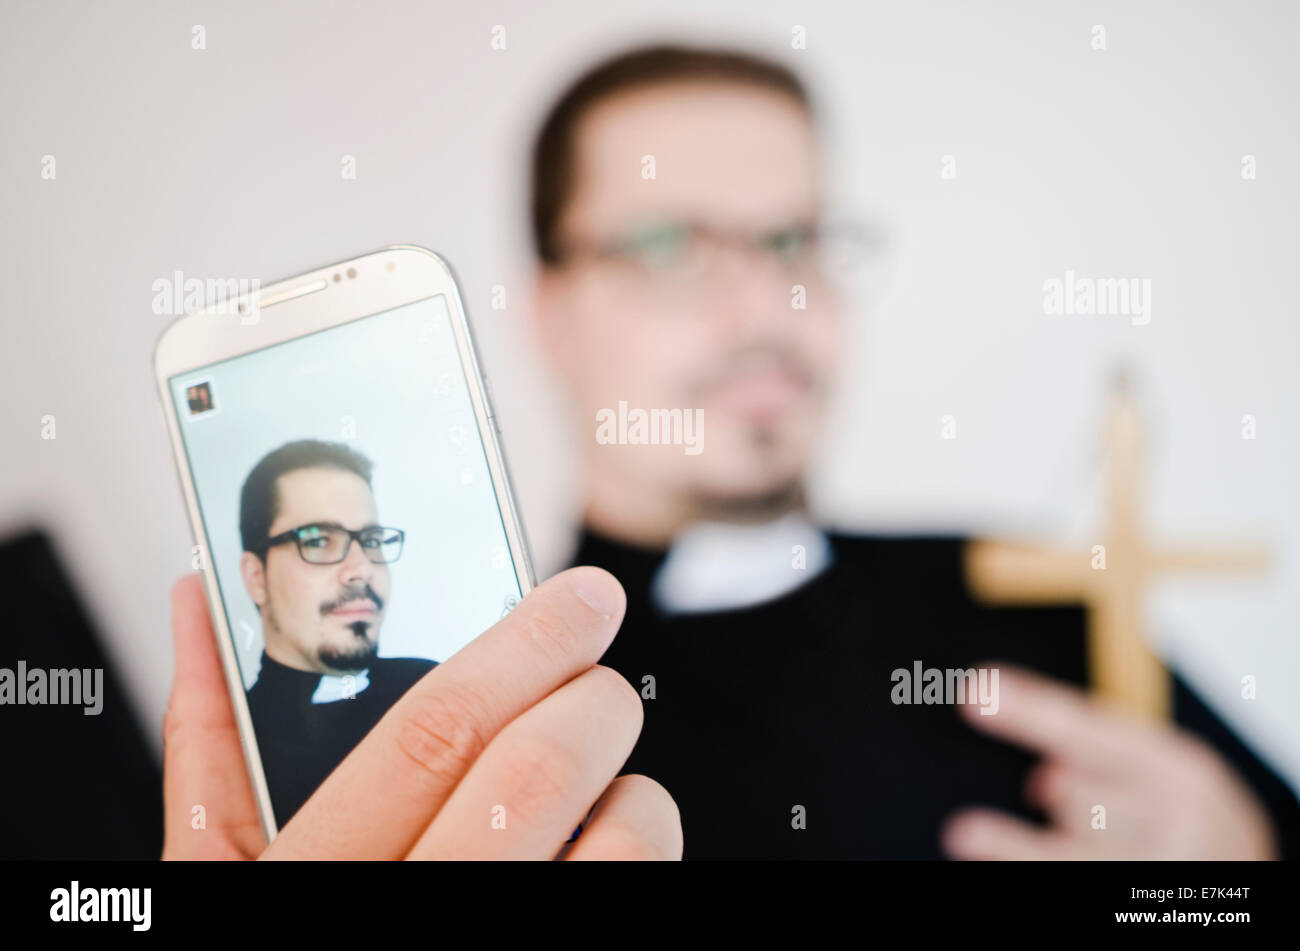 Foto de estudio imagen del sacerdote aislado sobre fondo blanco. Foto de stock